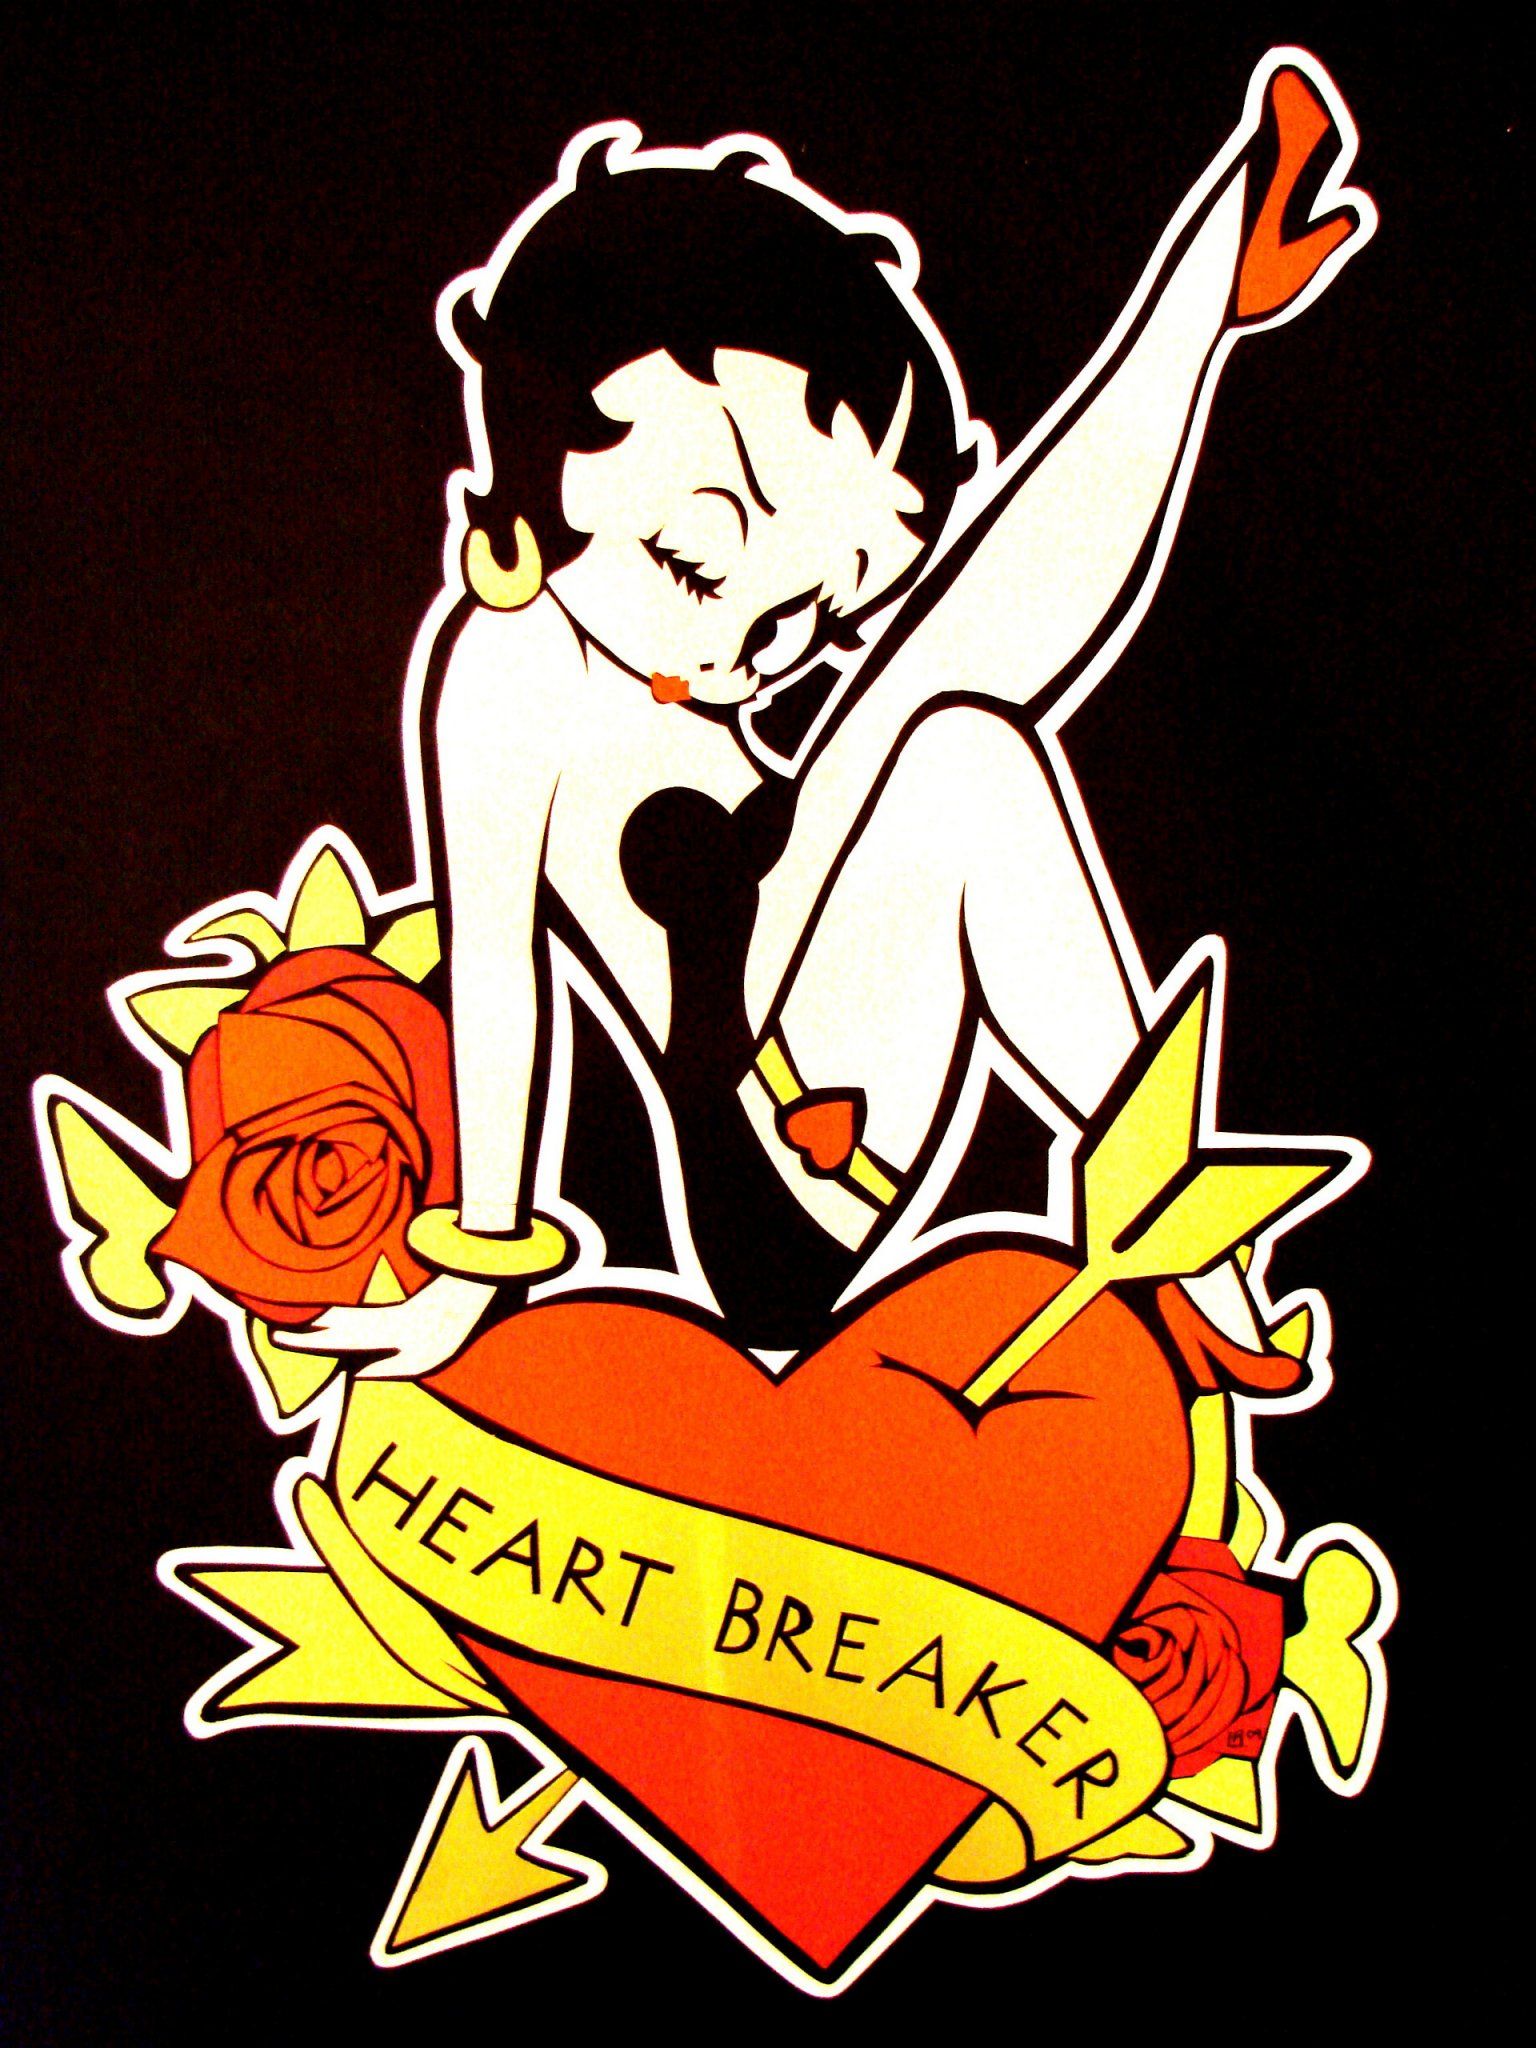 Betty heart breaker picture, Betty heart breaker image, Betty ...